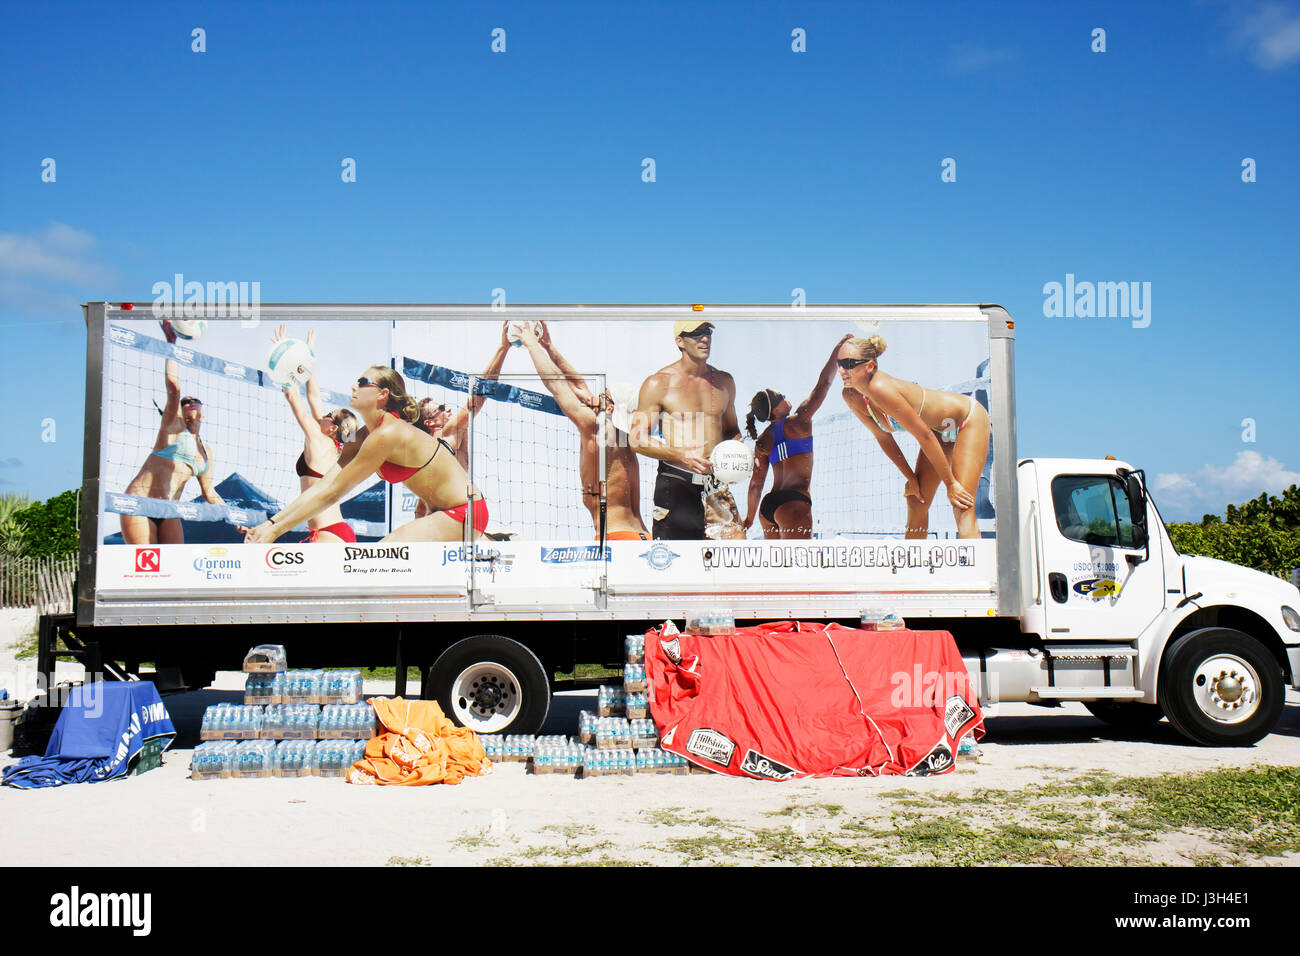 Miami Beach Florida,Lummus Park,gara di Beach volley,corporate,sponsor camion,camion,Zephyrhills,bottiglie d'acqua,casse,sabbia,nome marche,annuncio,pubblicità Foto Stock